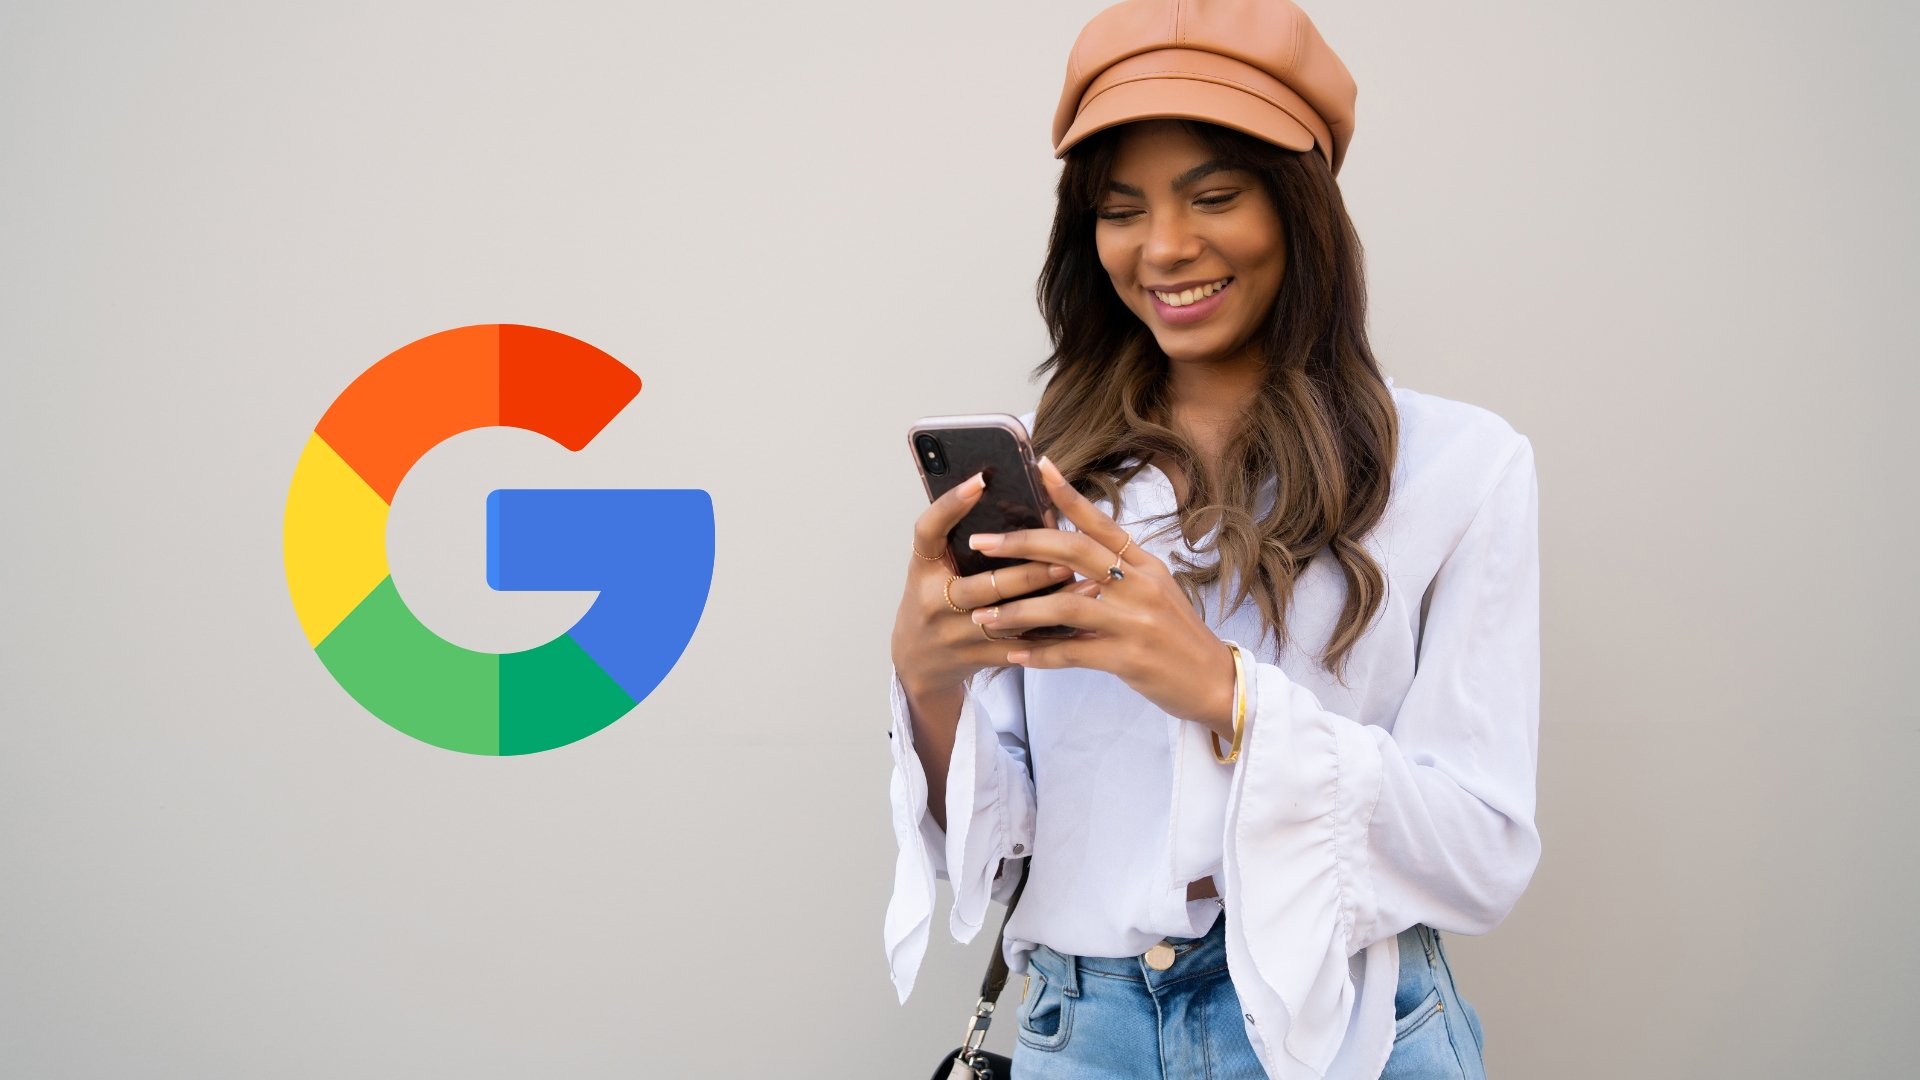 Utilizadora a usar smartphone com o logo da Google na lateral